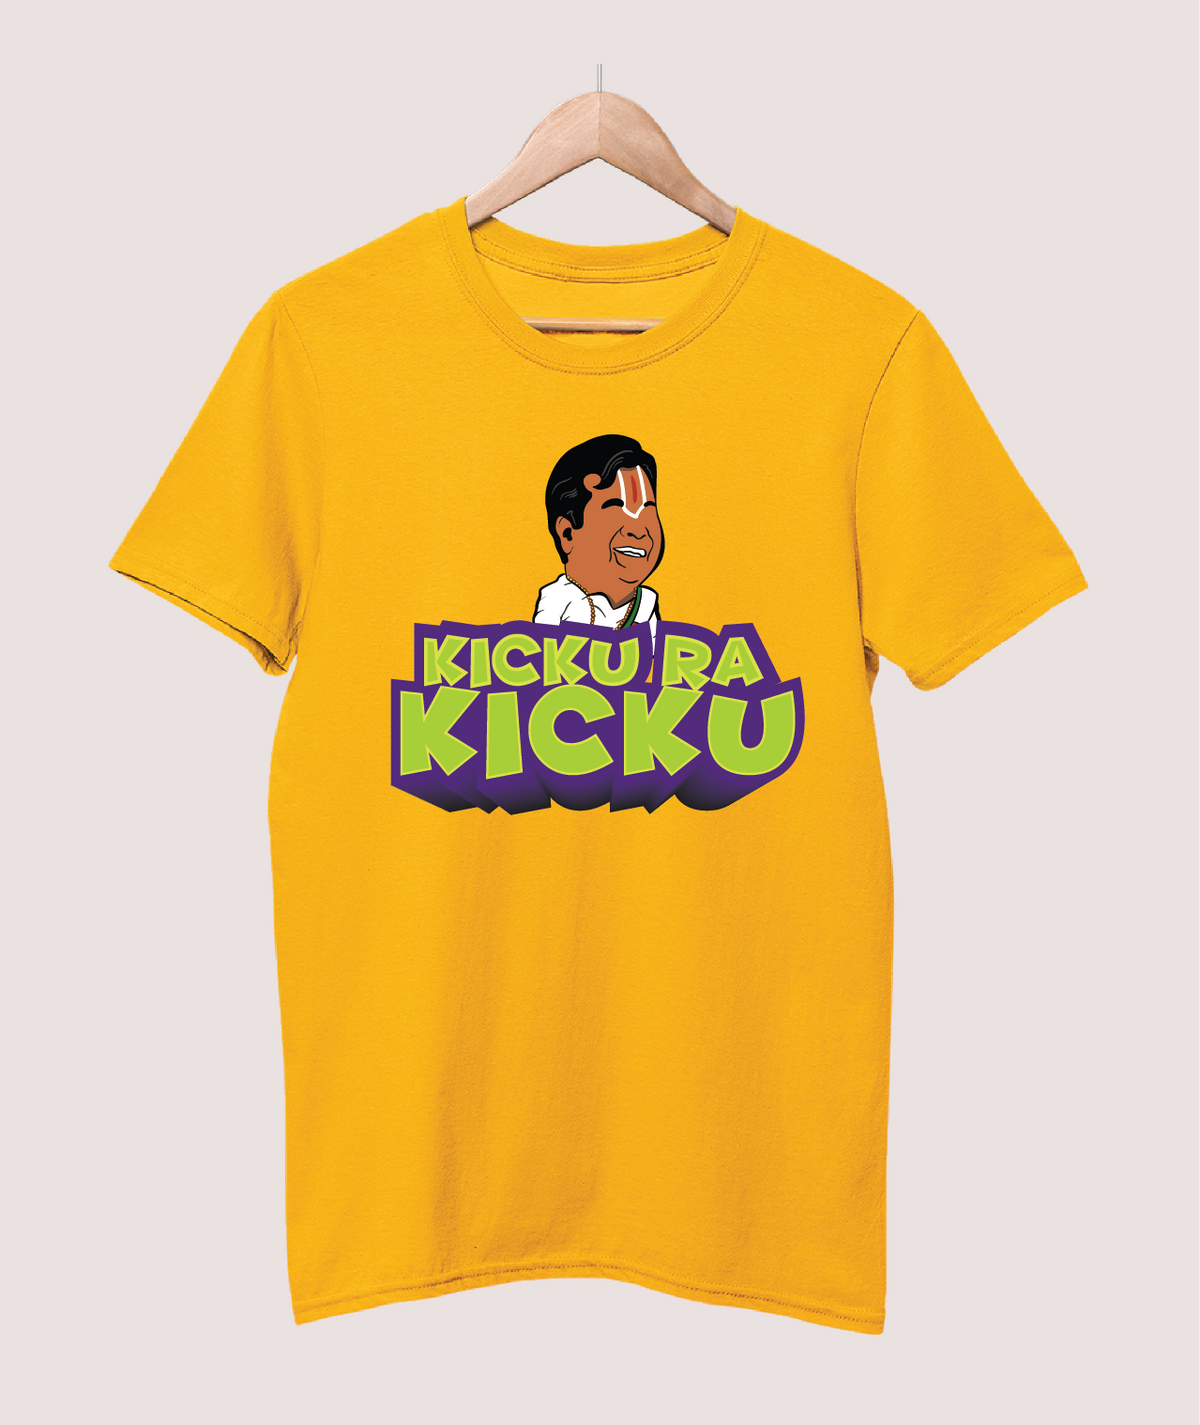 Kicku ra kicku T-shirt